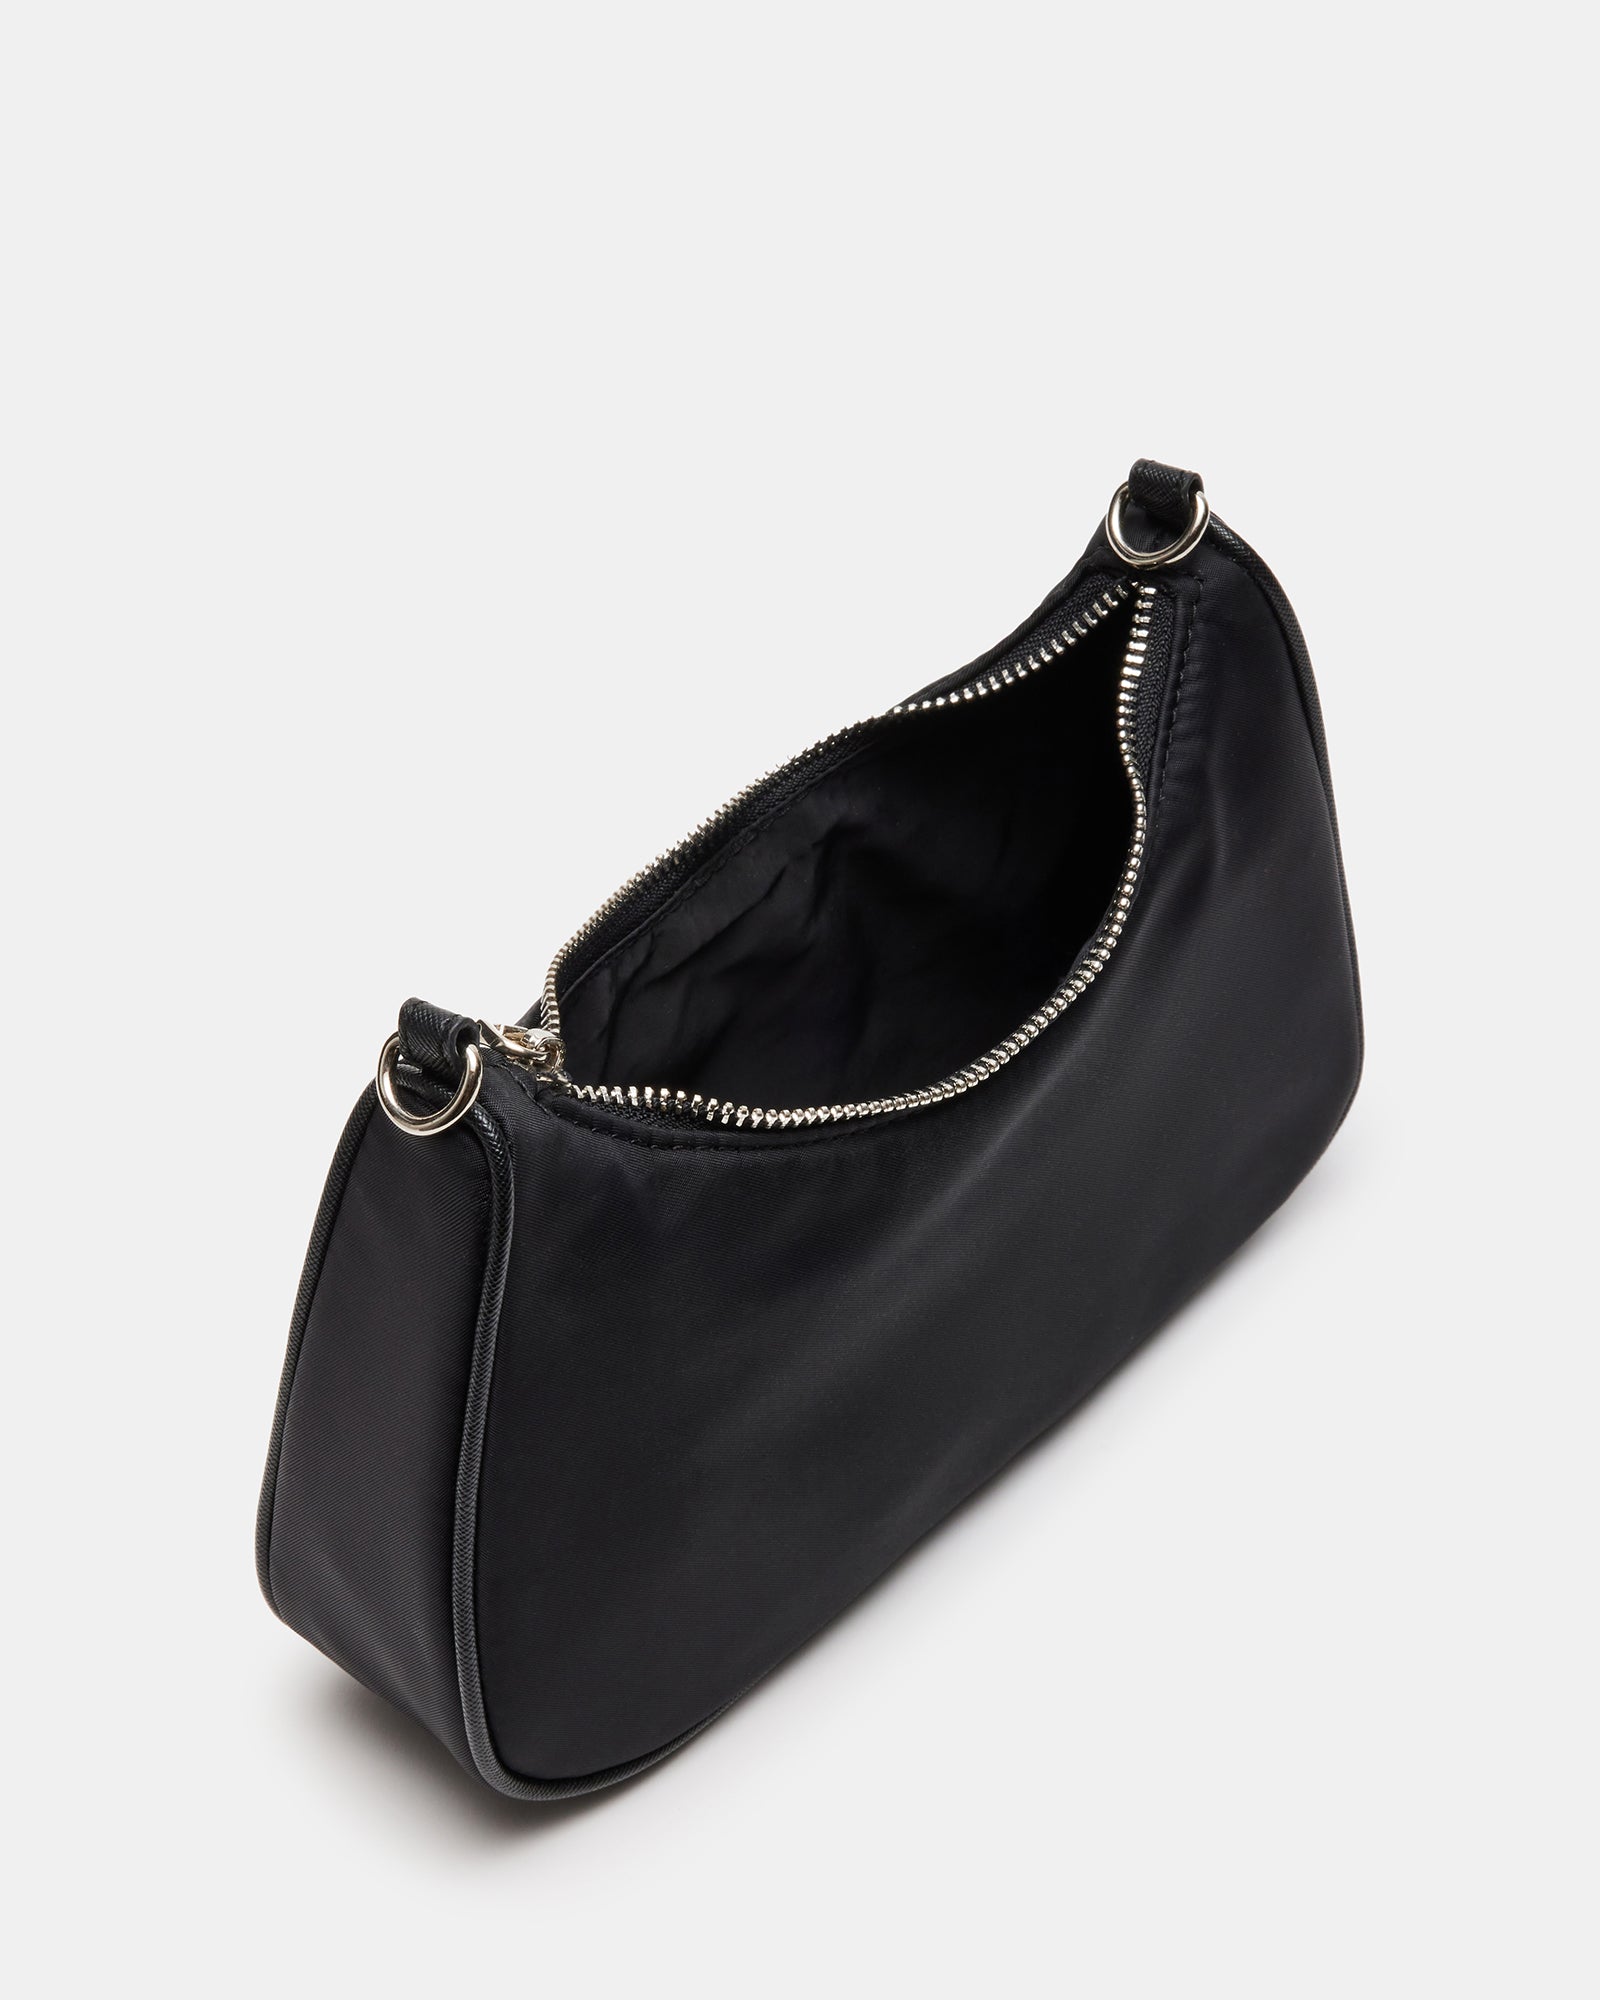 VITAL Bag Black Shoulder Bag | Black Shoulder Bag for Women – Steve Madden